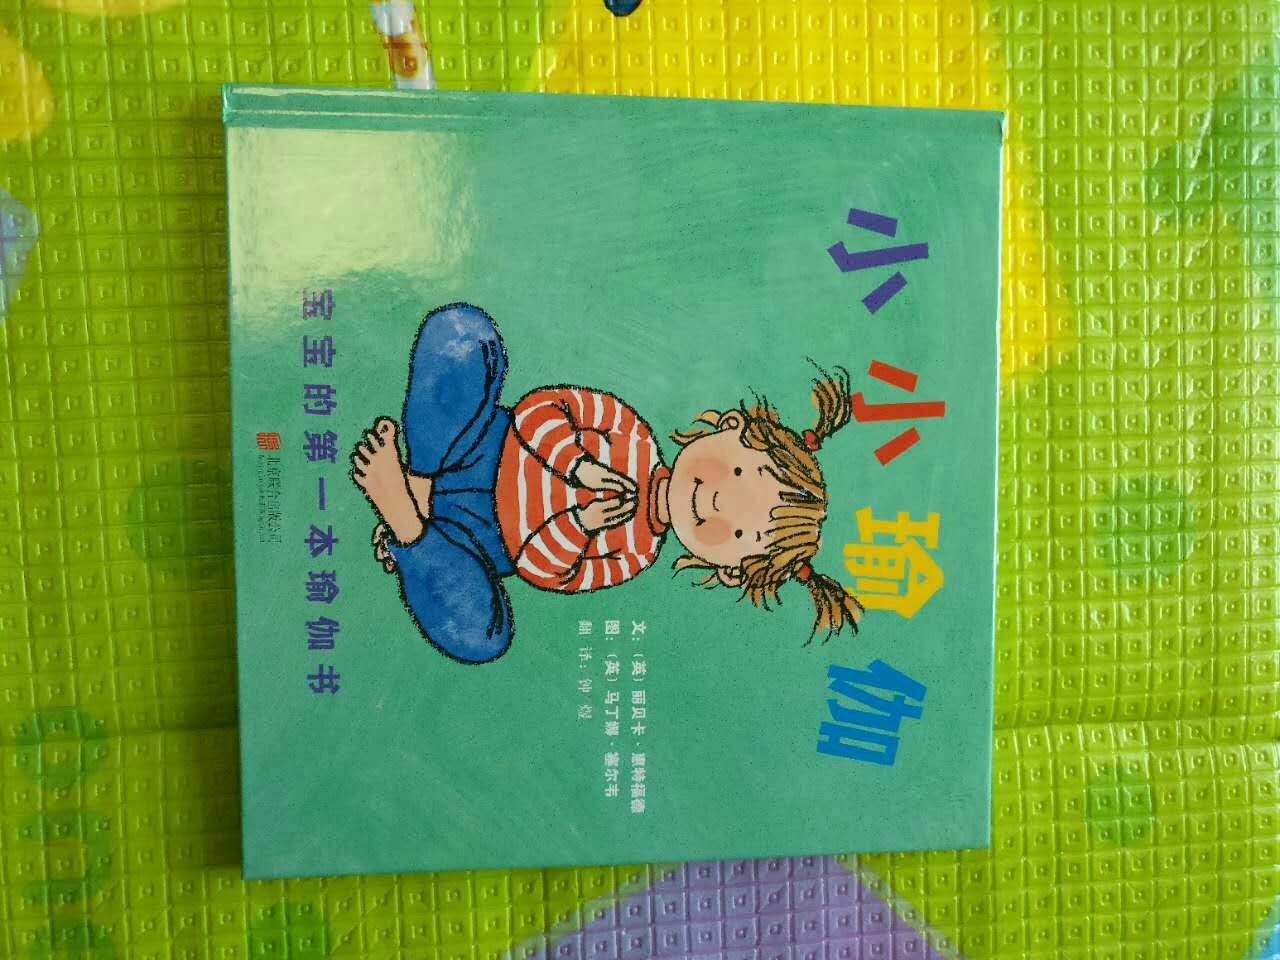 这是一套难以复制和逾越的中国原创儿童美术作品，主要面向5-8岁少儿读者。本书根据吴承恩著中国古典小说《西游记》改编，由陆新森、严定宪等三十二位美术名家联袂绘制，是一套《西游记》主题的大型彩色图画书。本书曾翻译成多种语言向全世界发行，代表了中国当代儿童美术创作的水准，深受海内外读者喜爱。